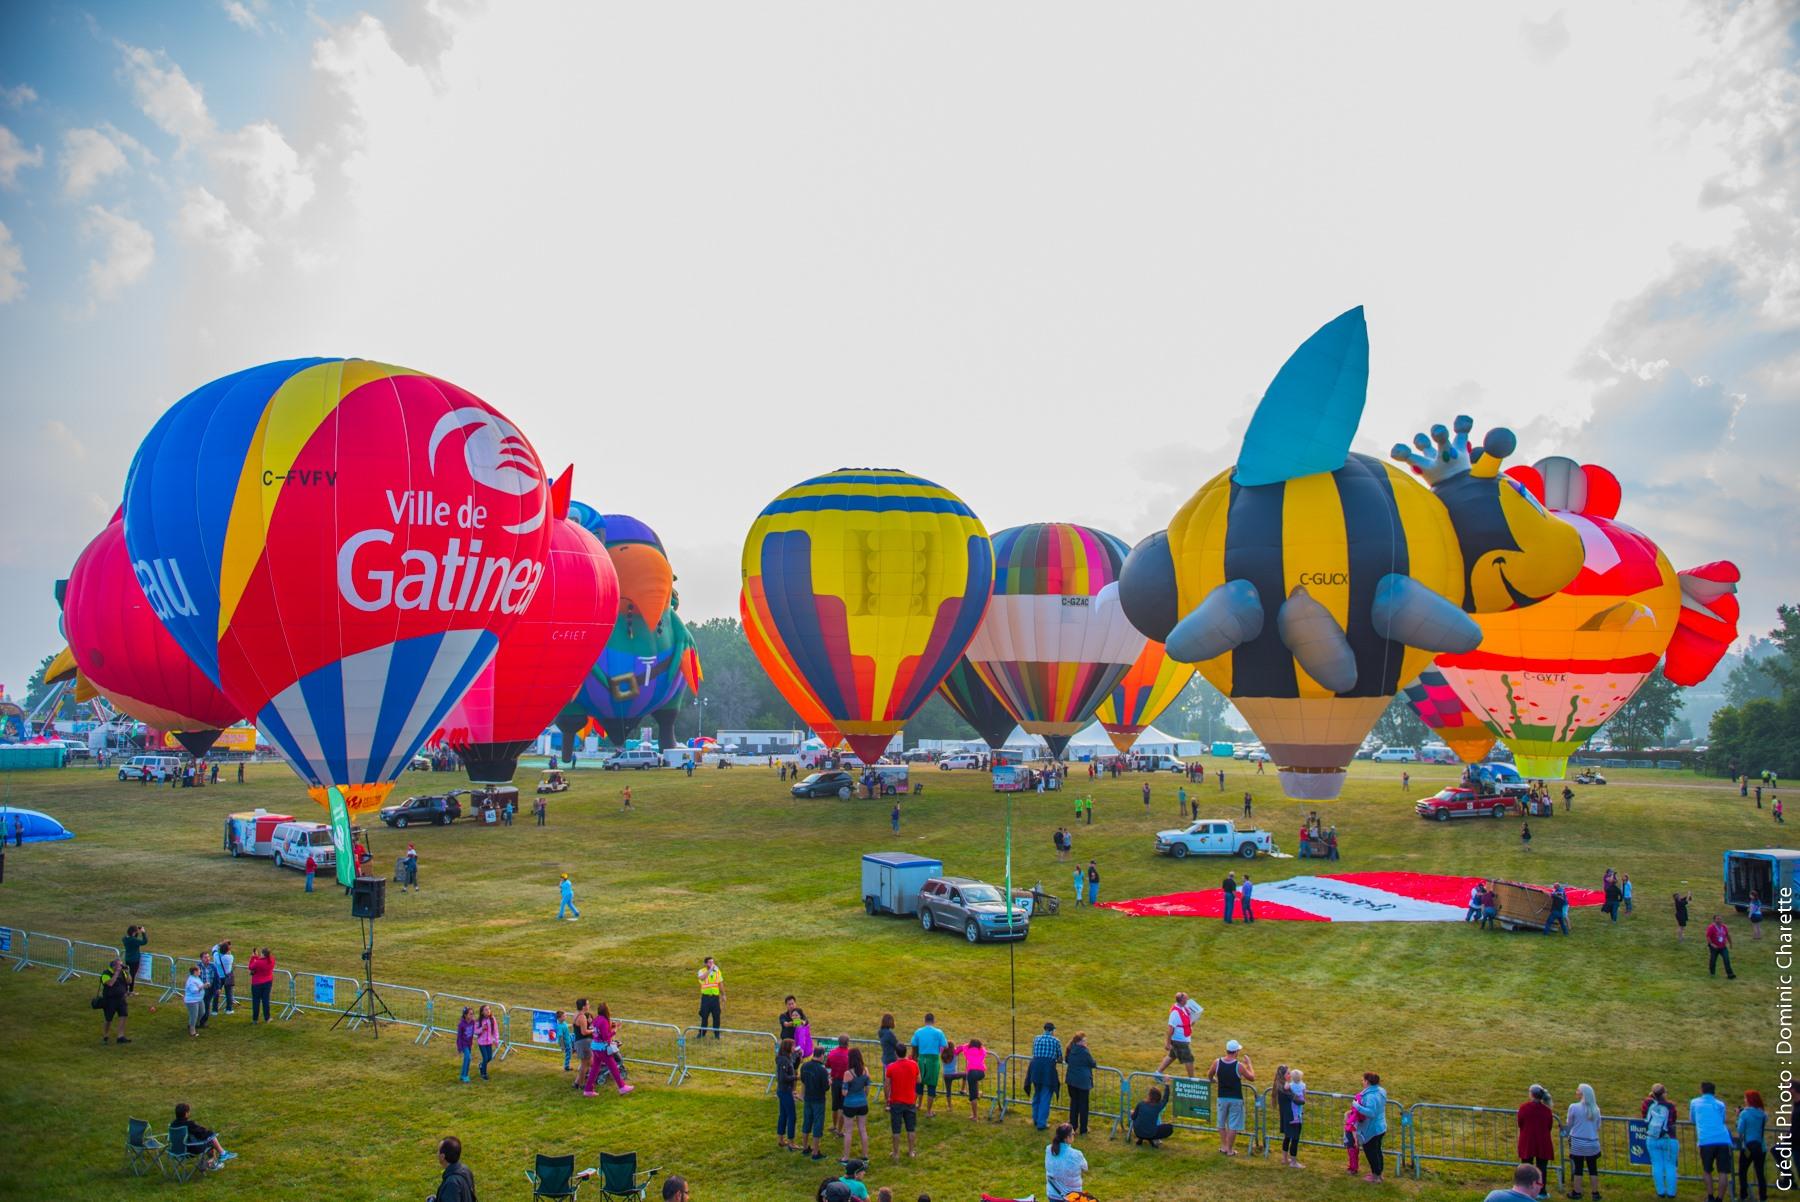 FMG – Festival de montgolfières de Gatineau